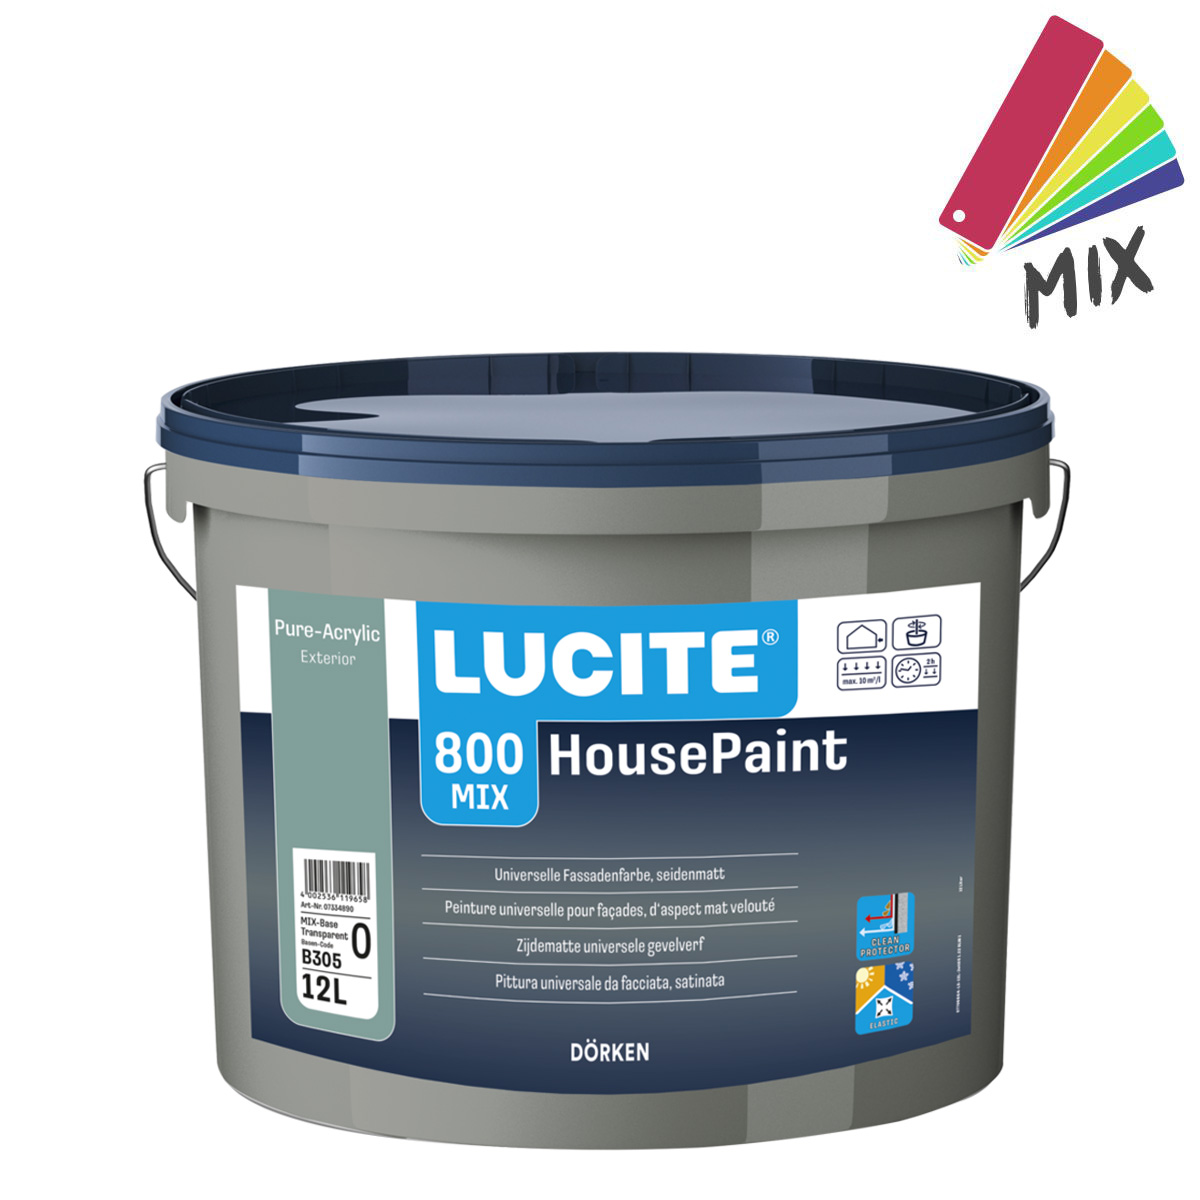 lucite_800-housepaint_12L_mix_gross